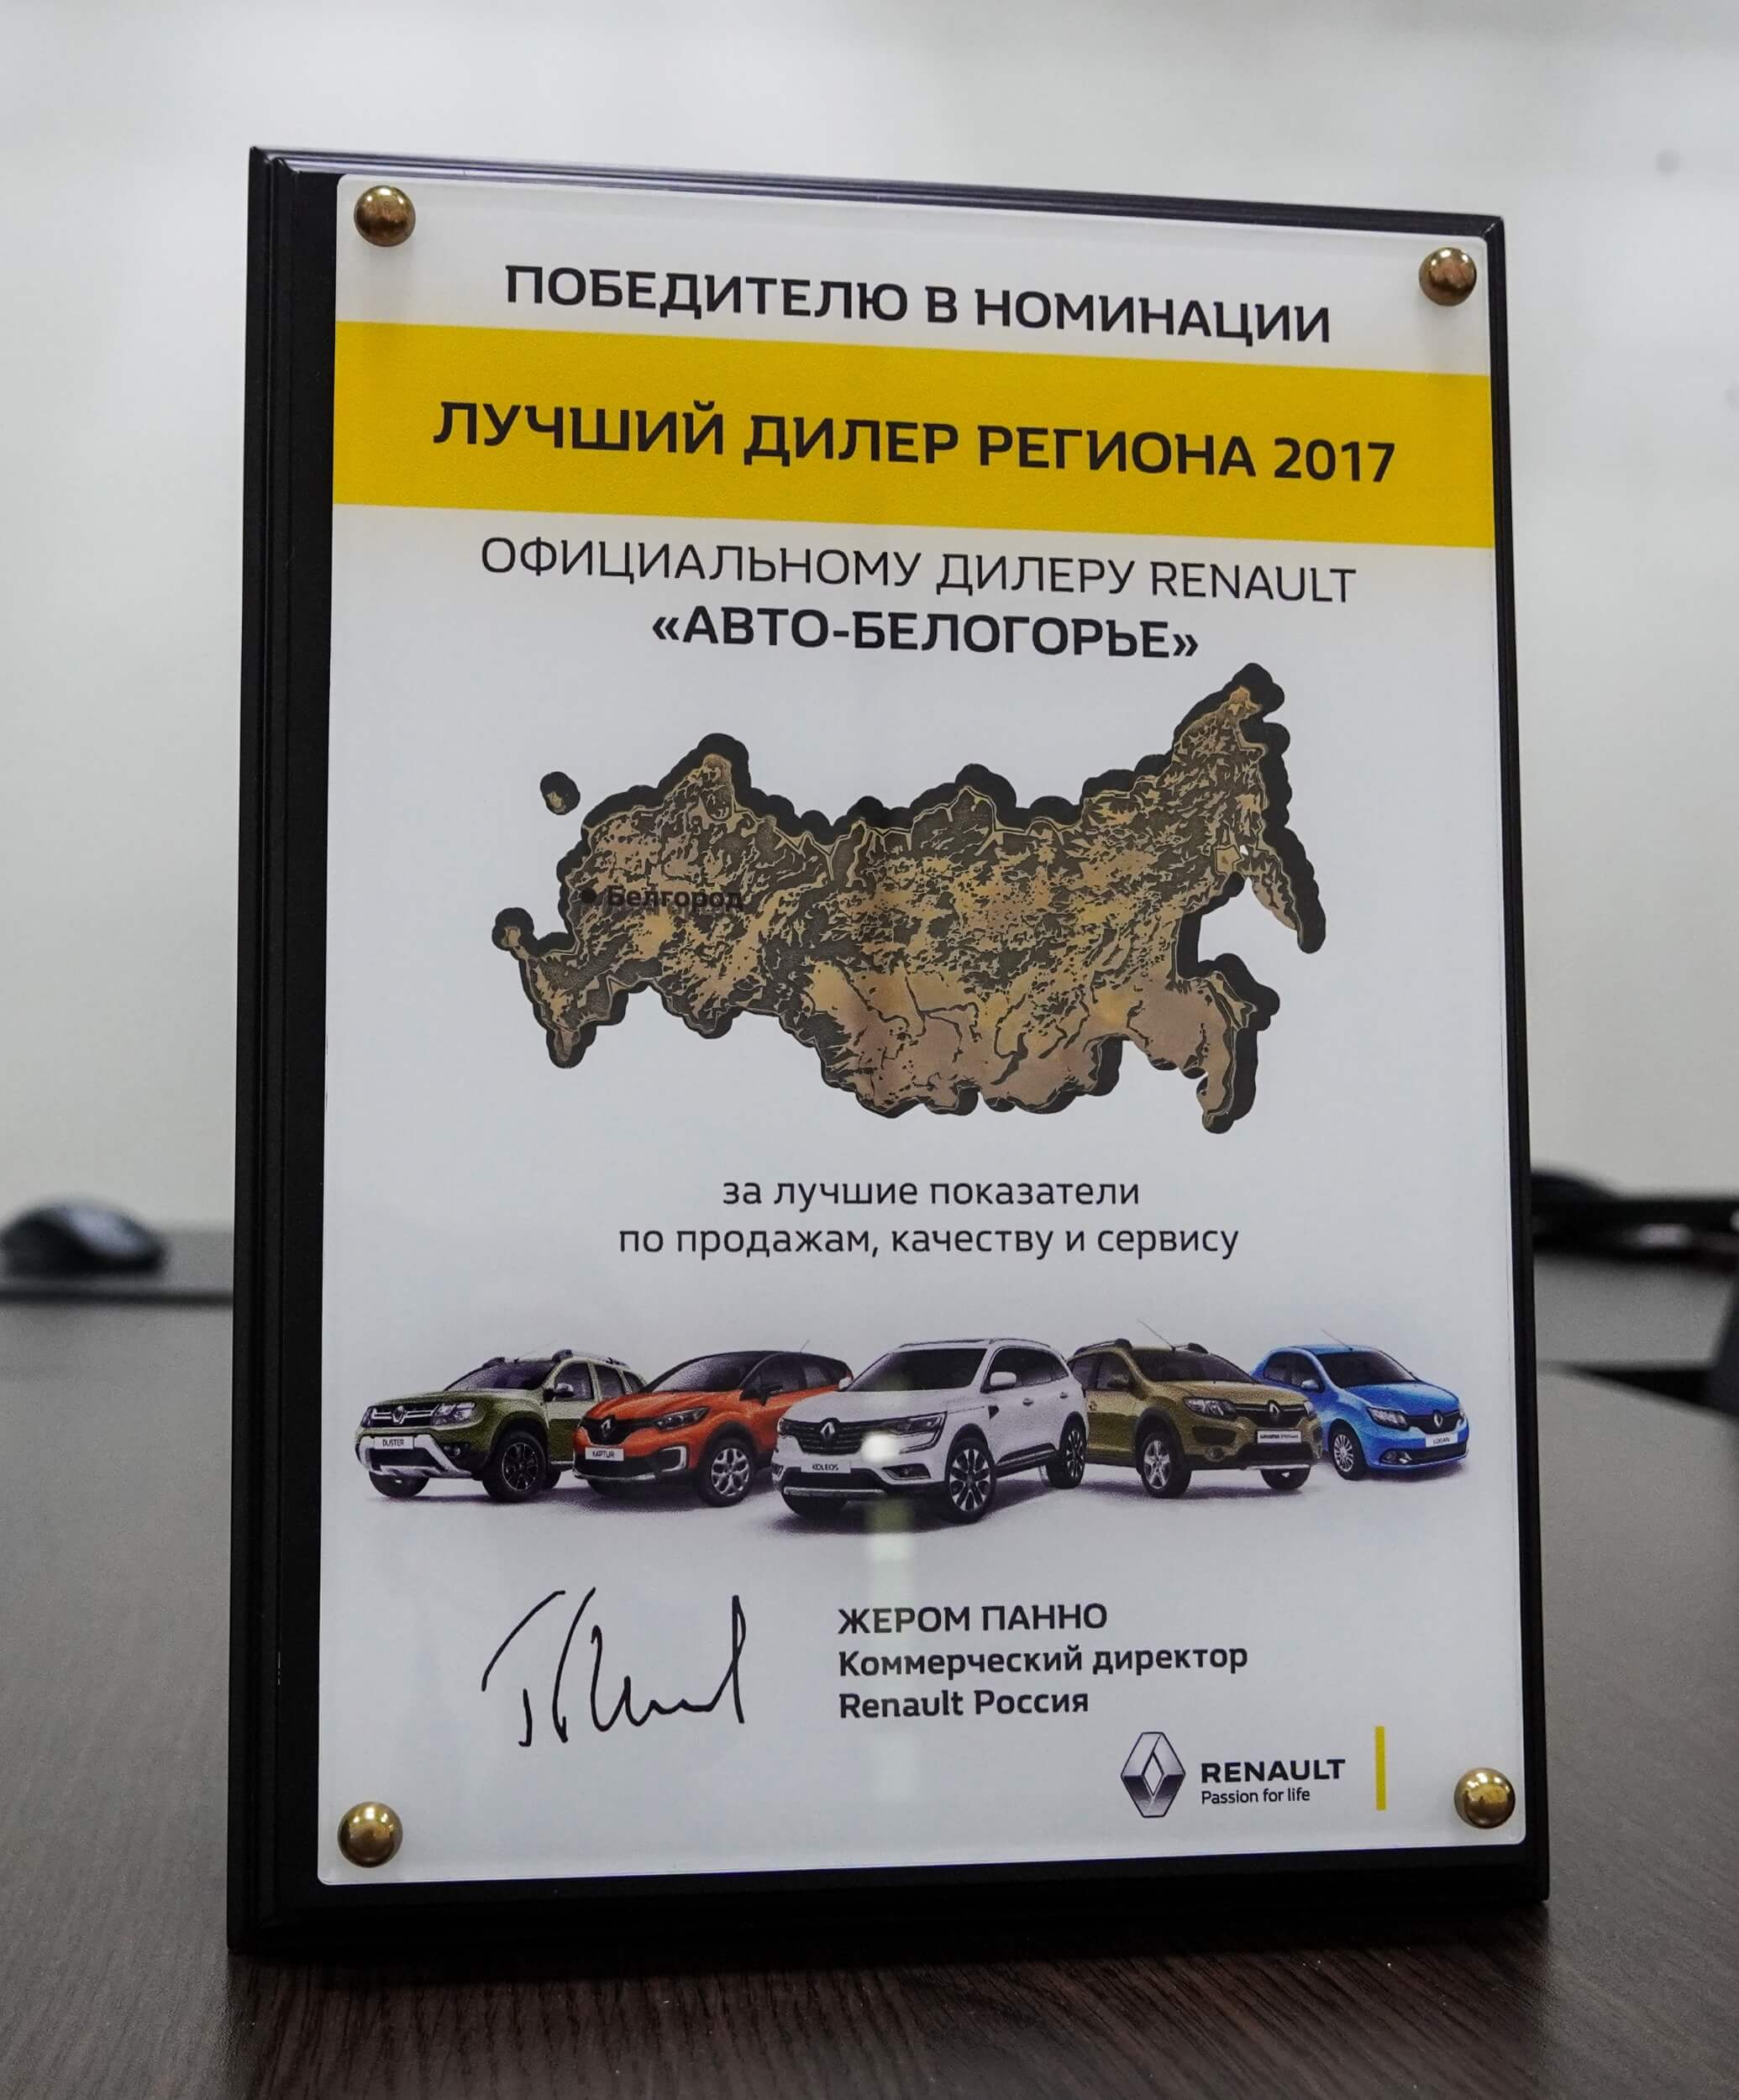 Лучший дилер региона 2017. Официальный дилер Renault в Белгородской области: за лучшие показатели по продажам, качеству и сервису.